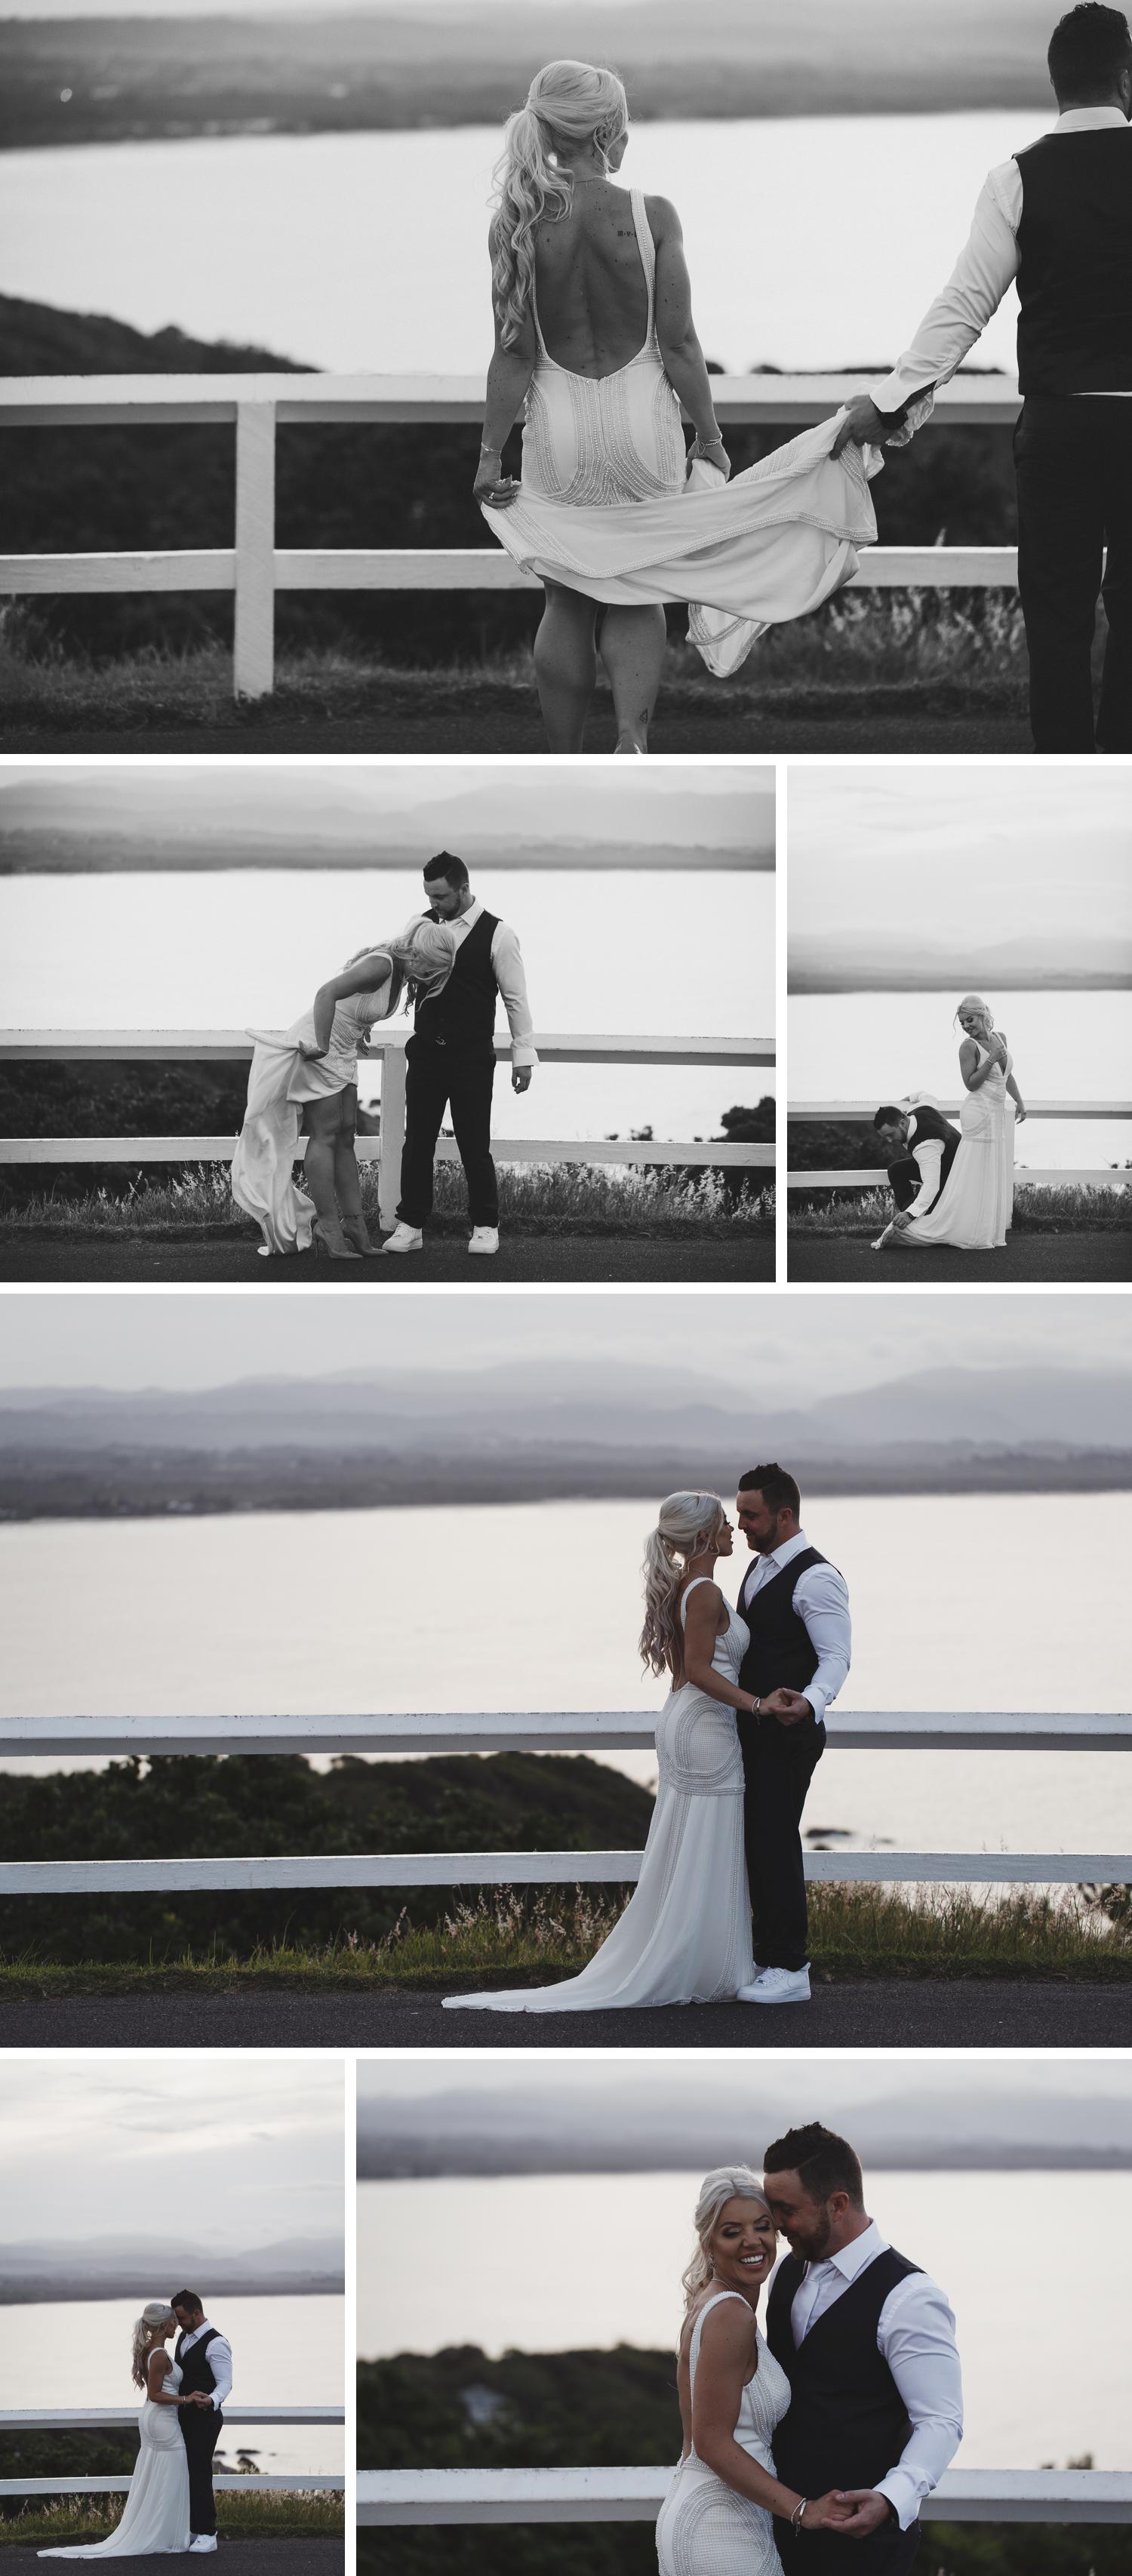 Byron Bay Victoria Wedding Photos, Byron Bay Surf Club Wedding, Byron Bay Lighthouse, Bride and Groom Embracing Wedding Photos by Danae Studios